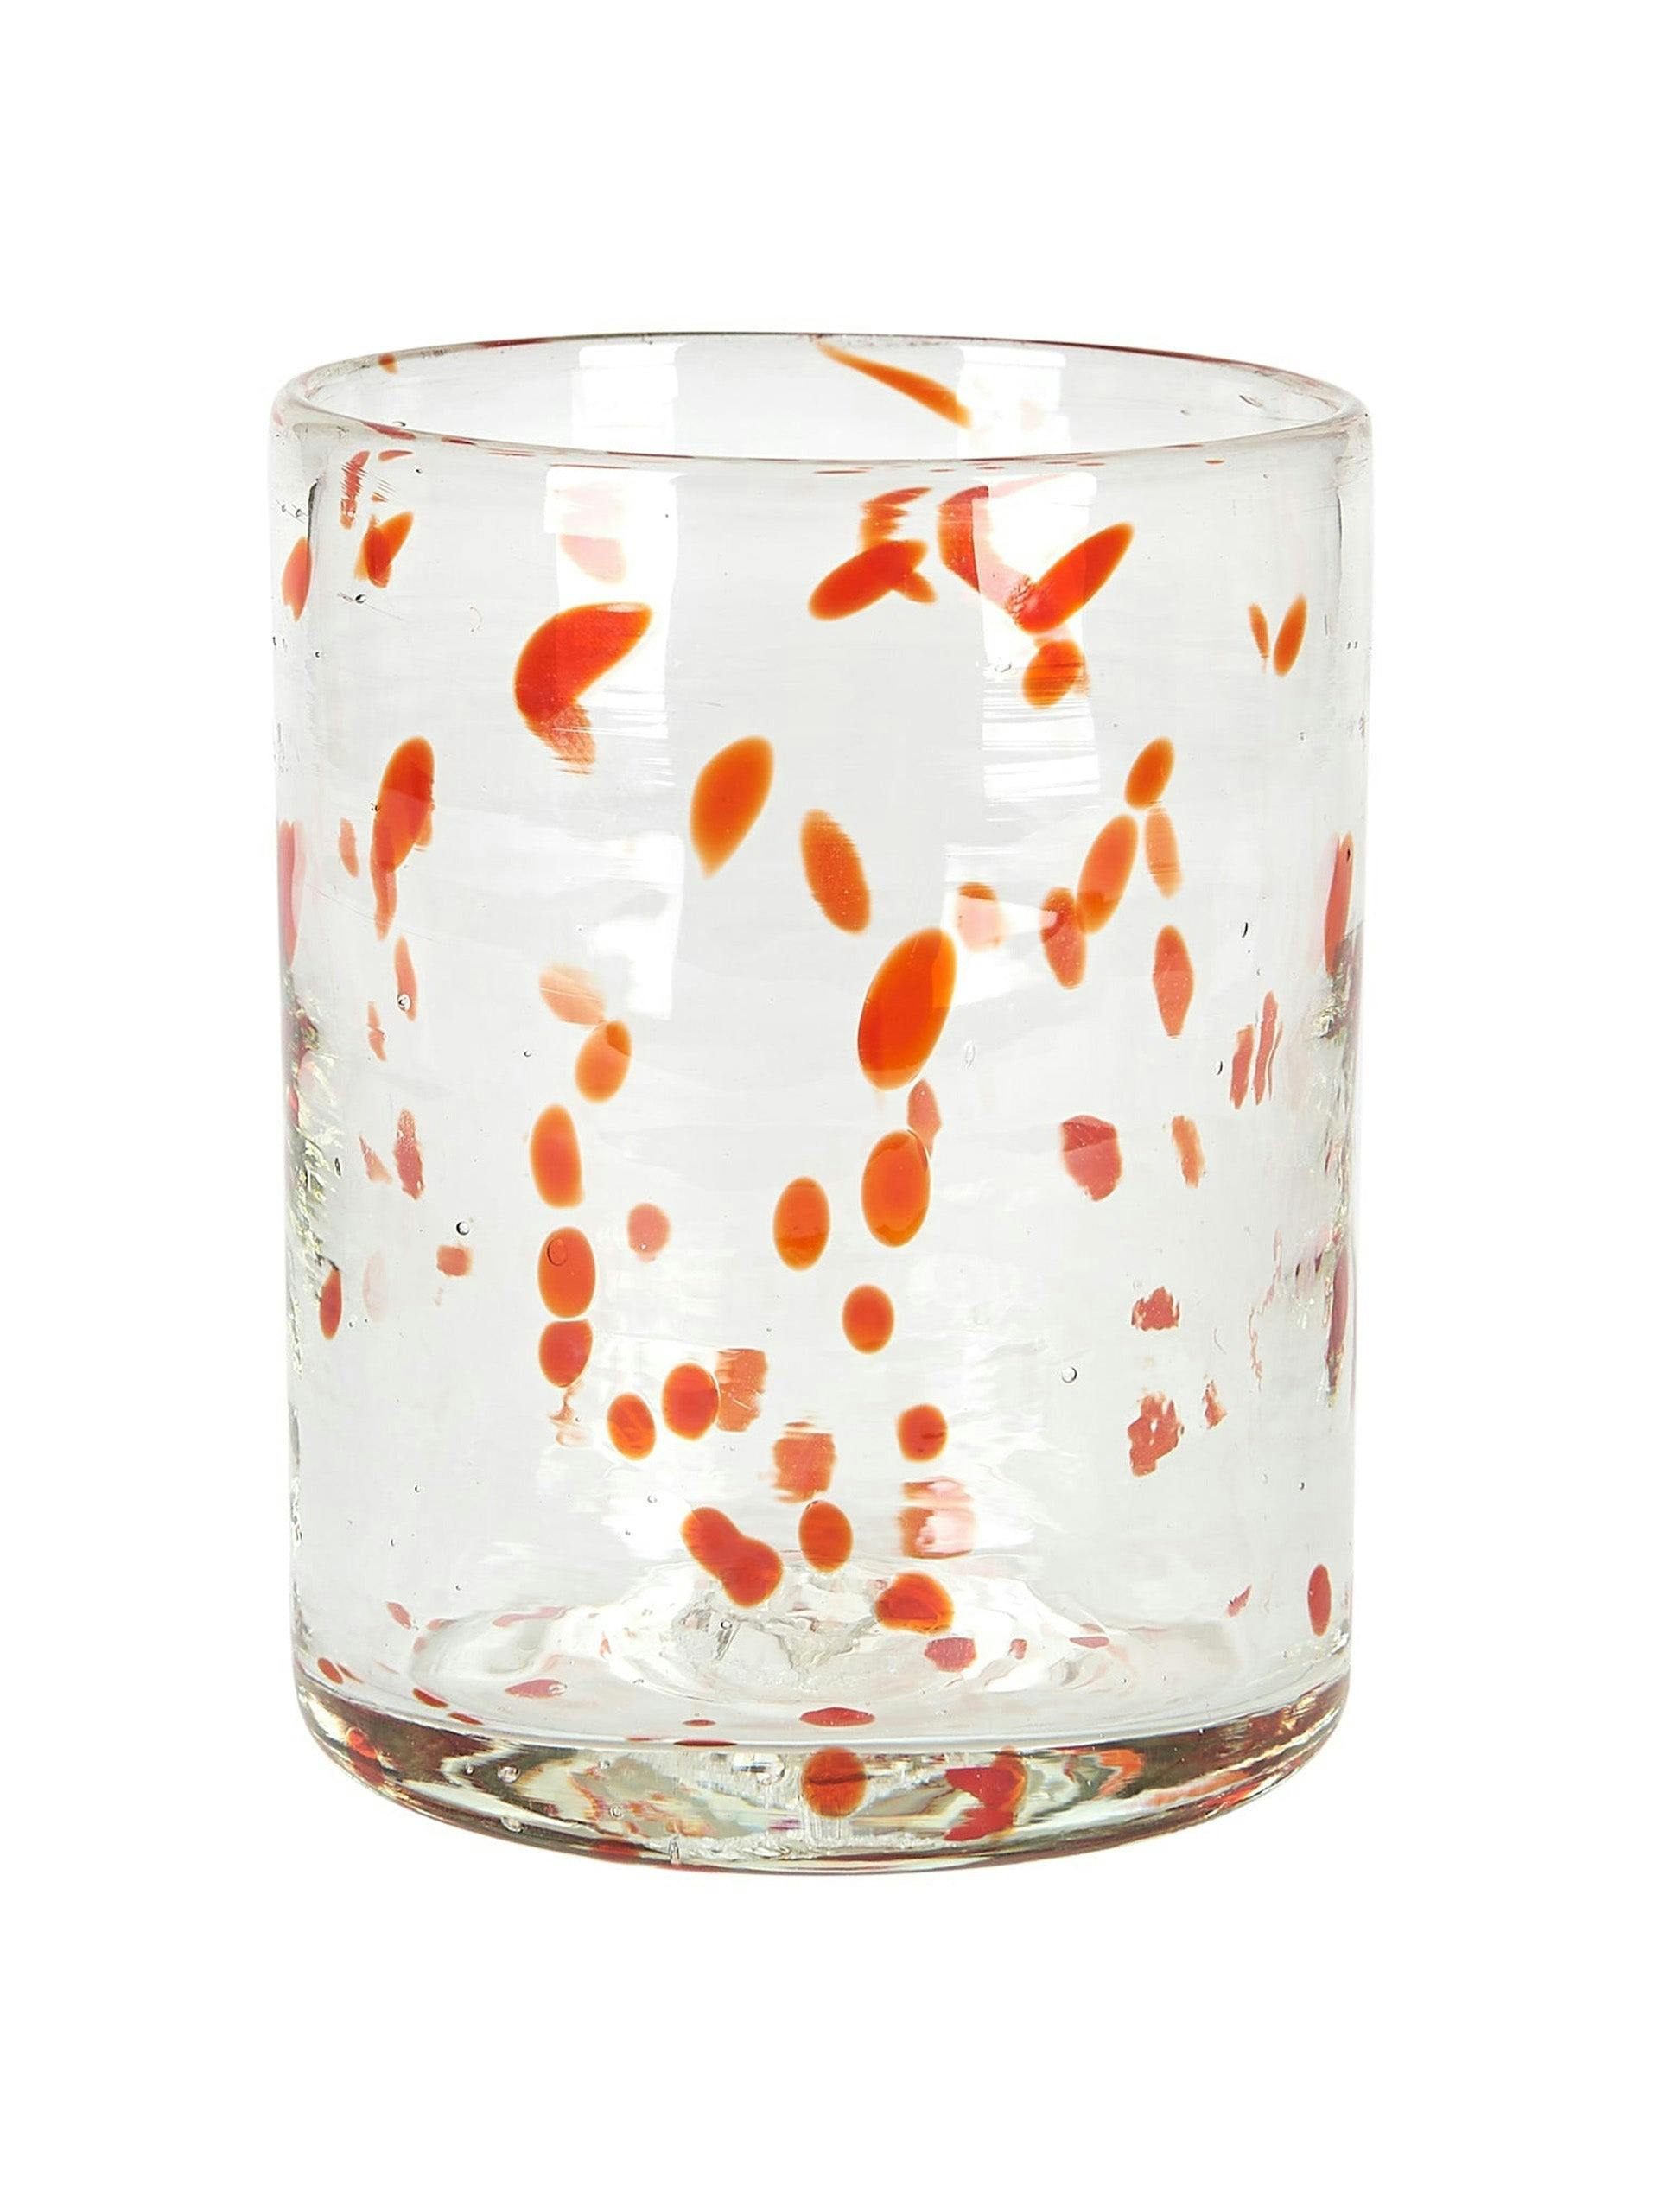 Amber confetti Murano glass tumbler